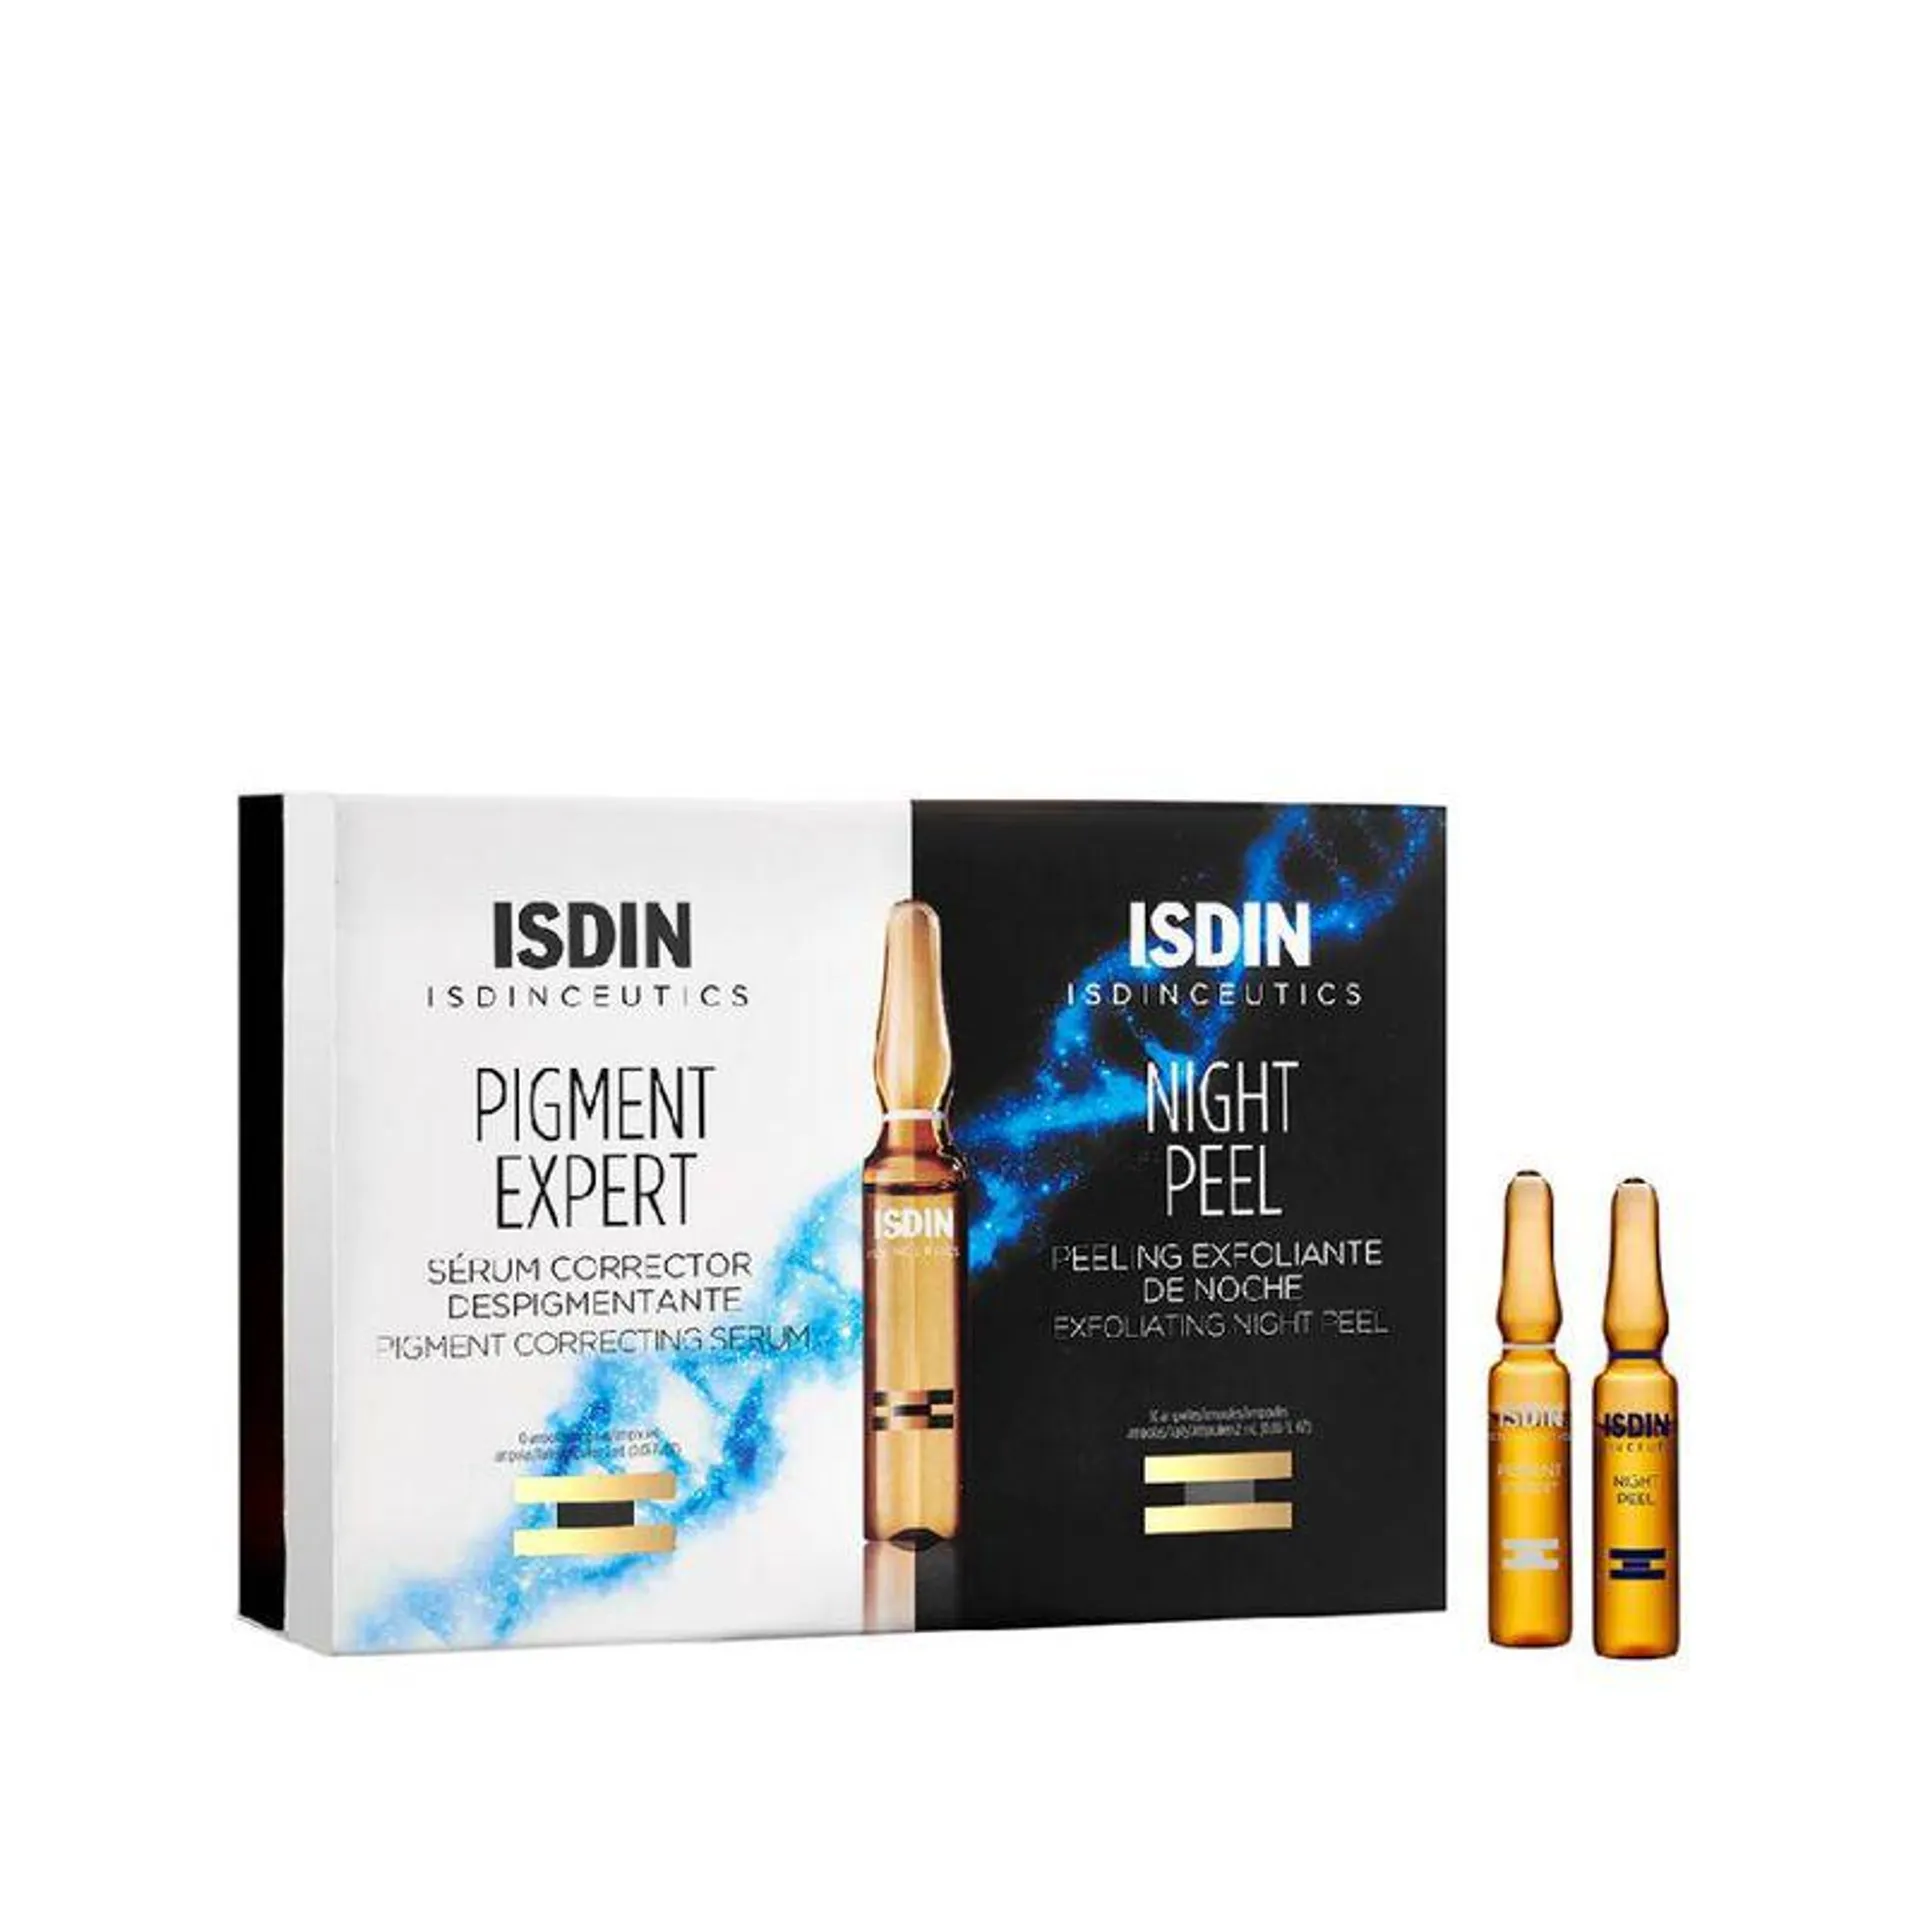 Isdinceutics Pigment Expert y Night Peel - Isdin